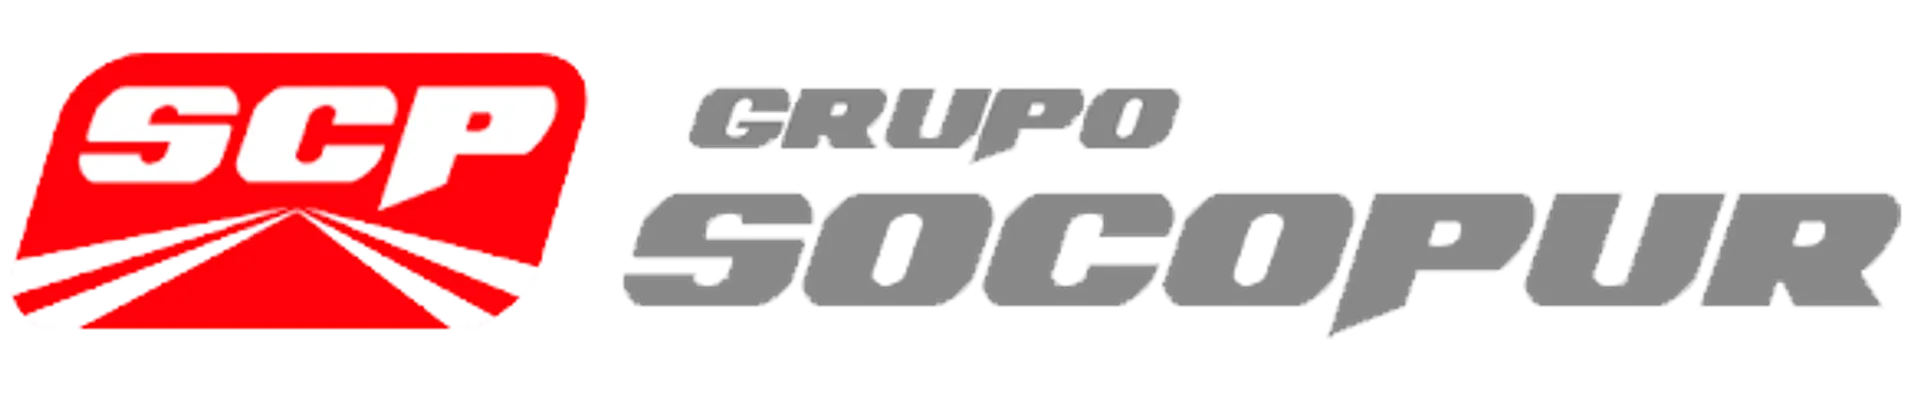 SOCOPUR logo de catálogo